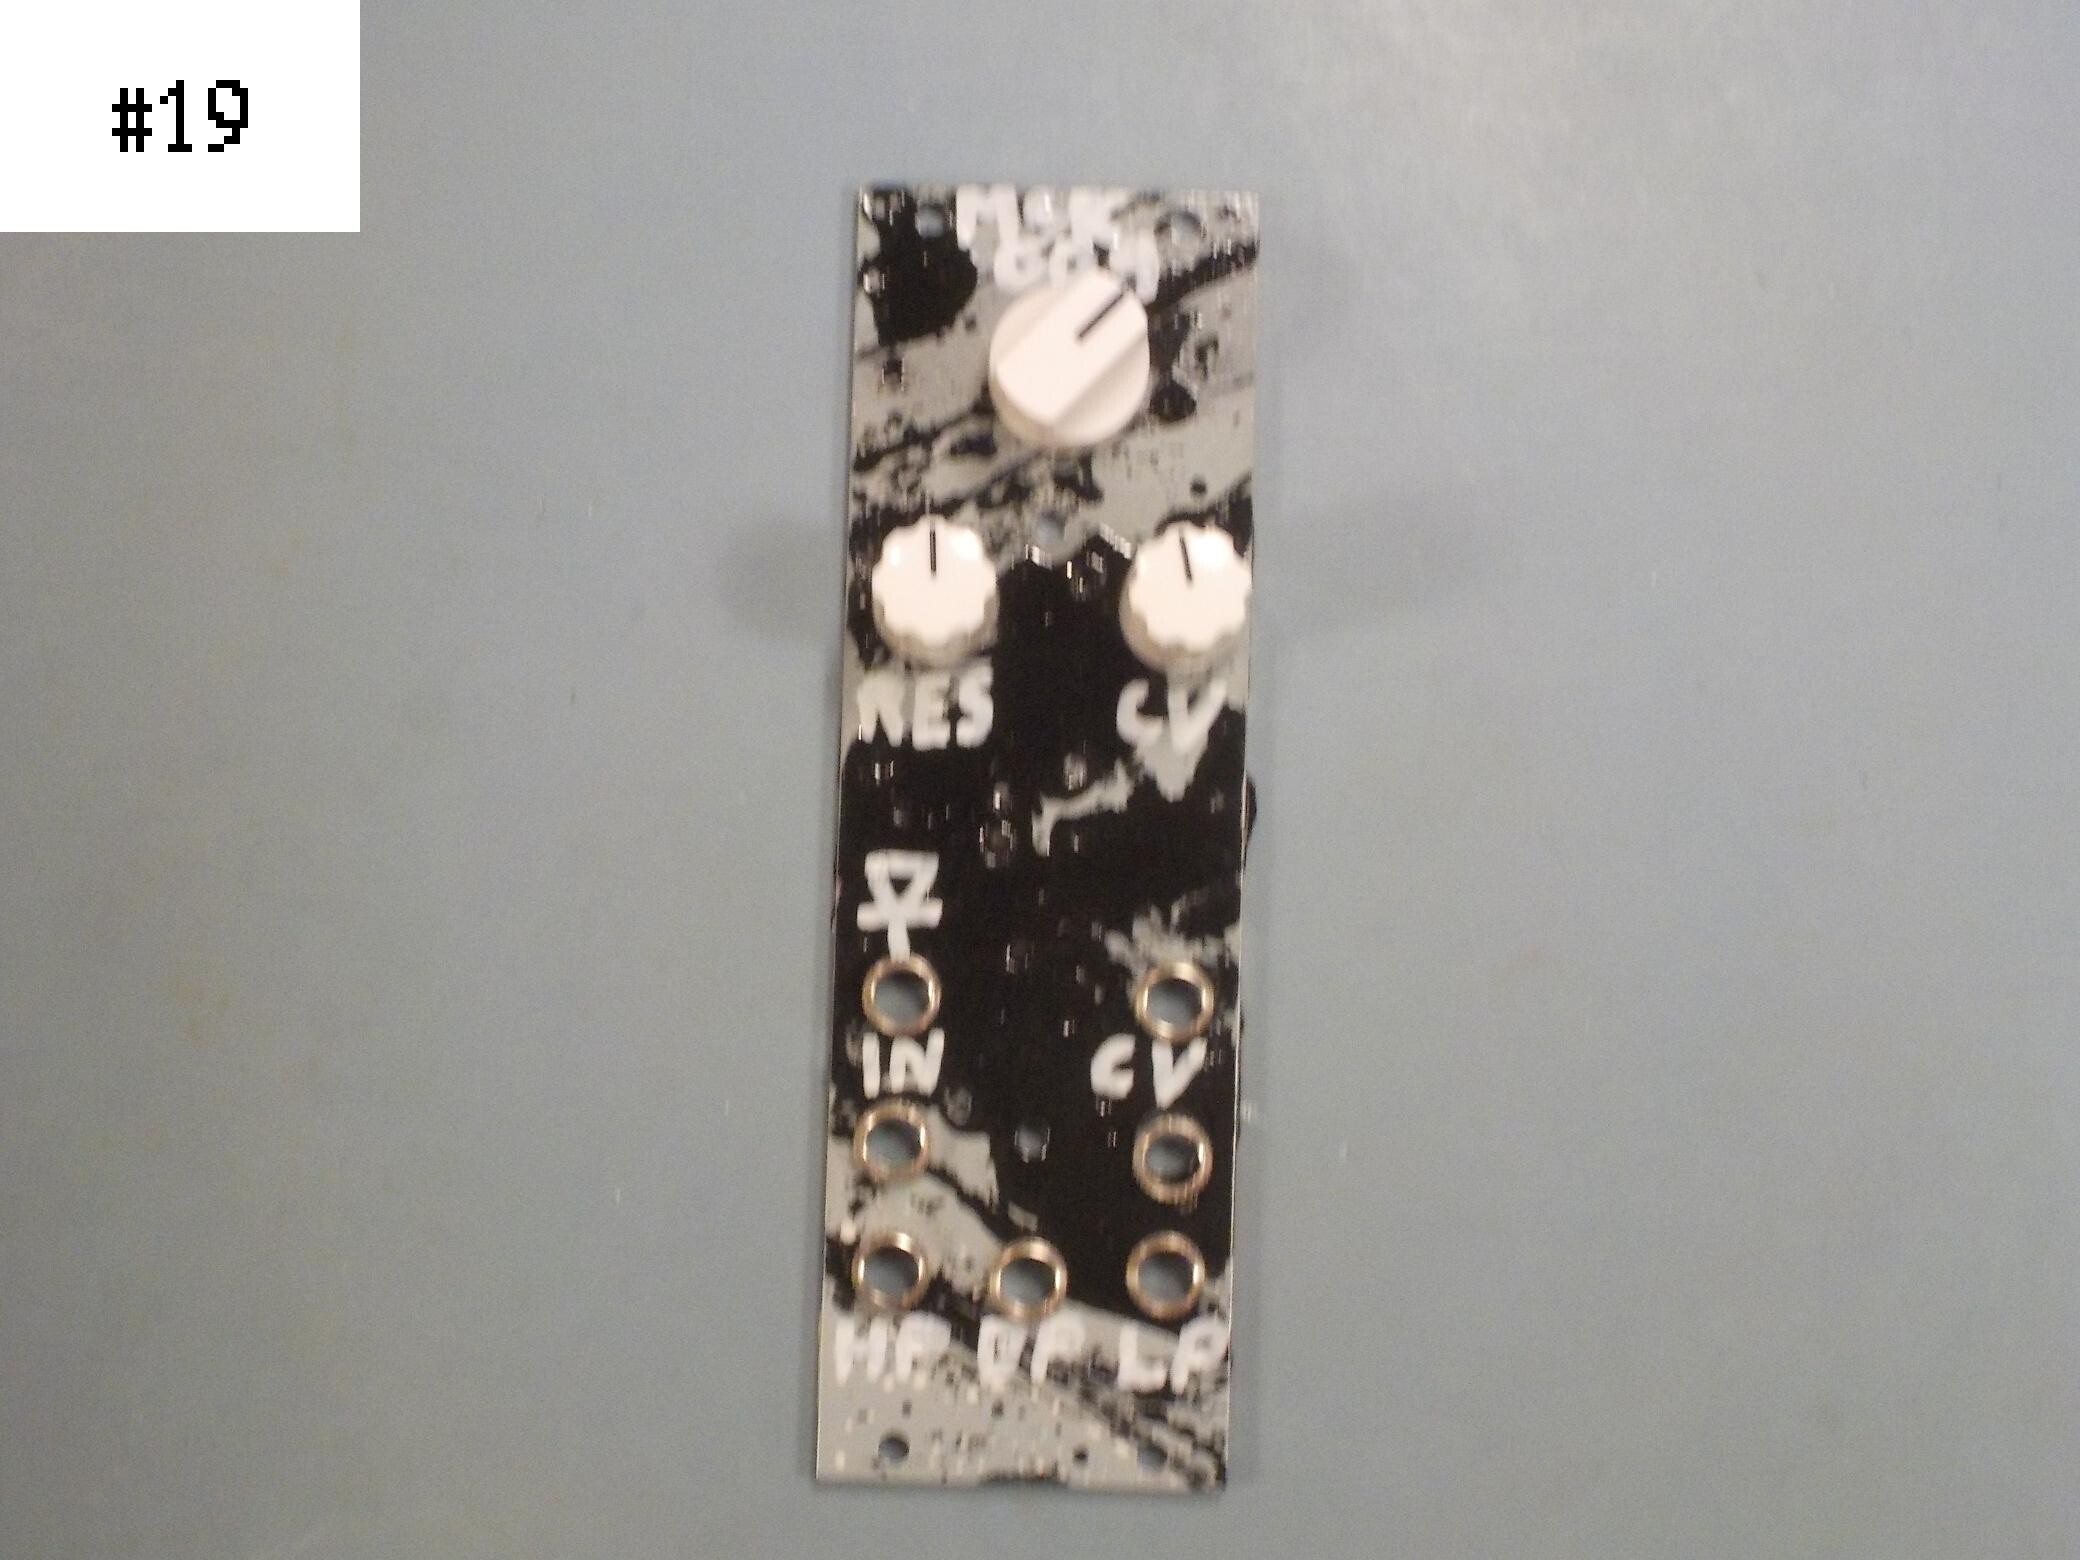 MSK 009 Coiler VCF, custom panel #19